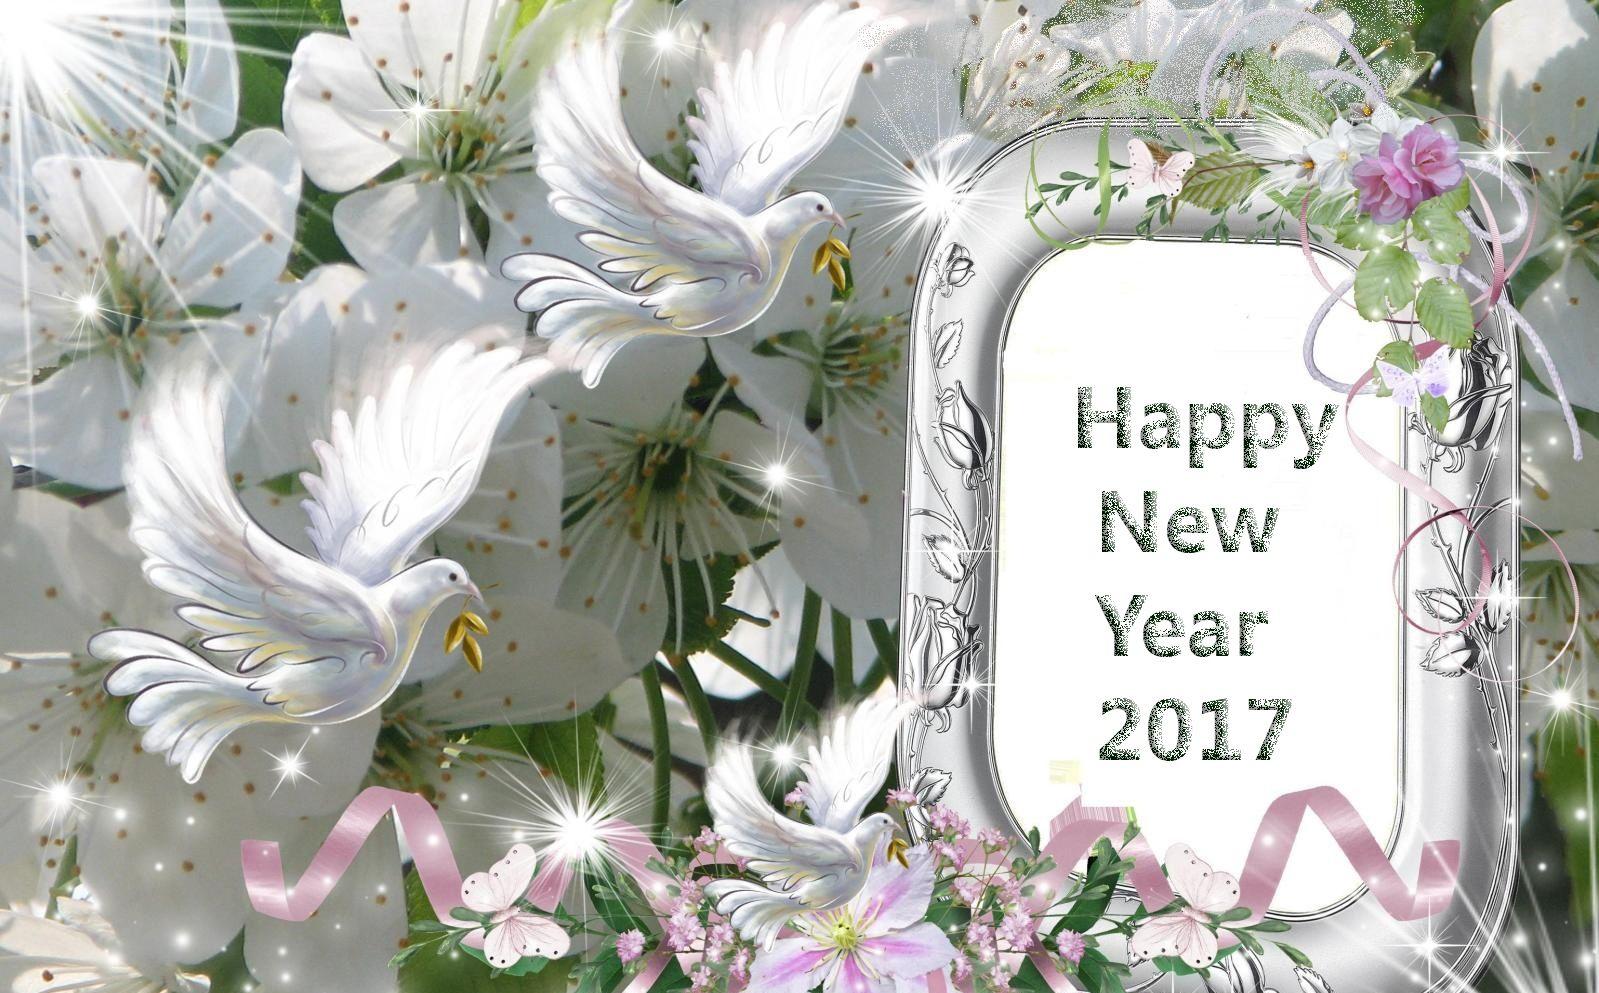 Happy New Year Image 2017. Happy New Year Image